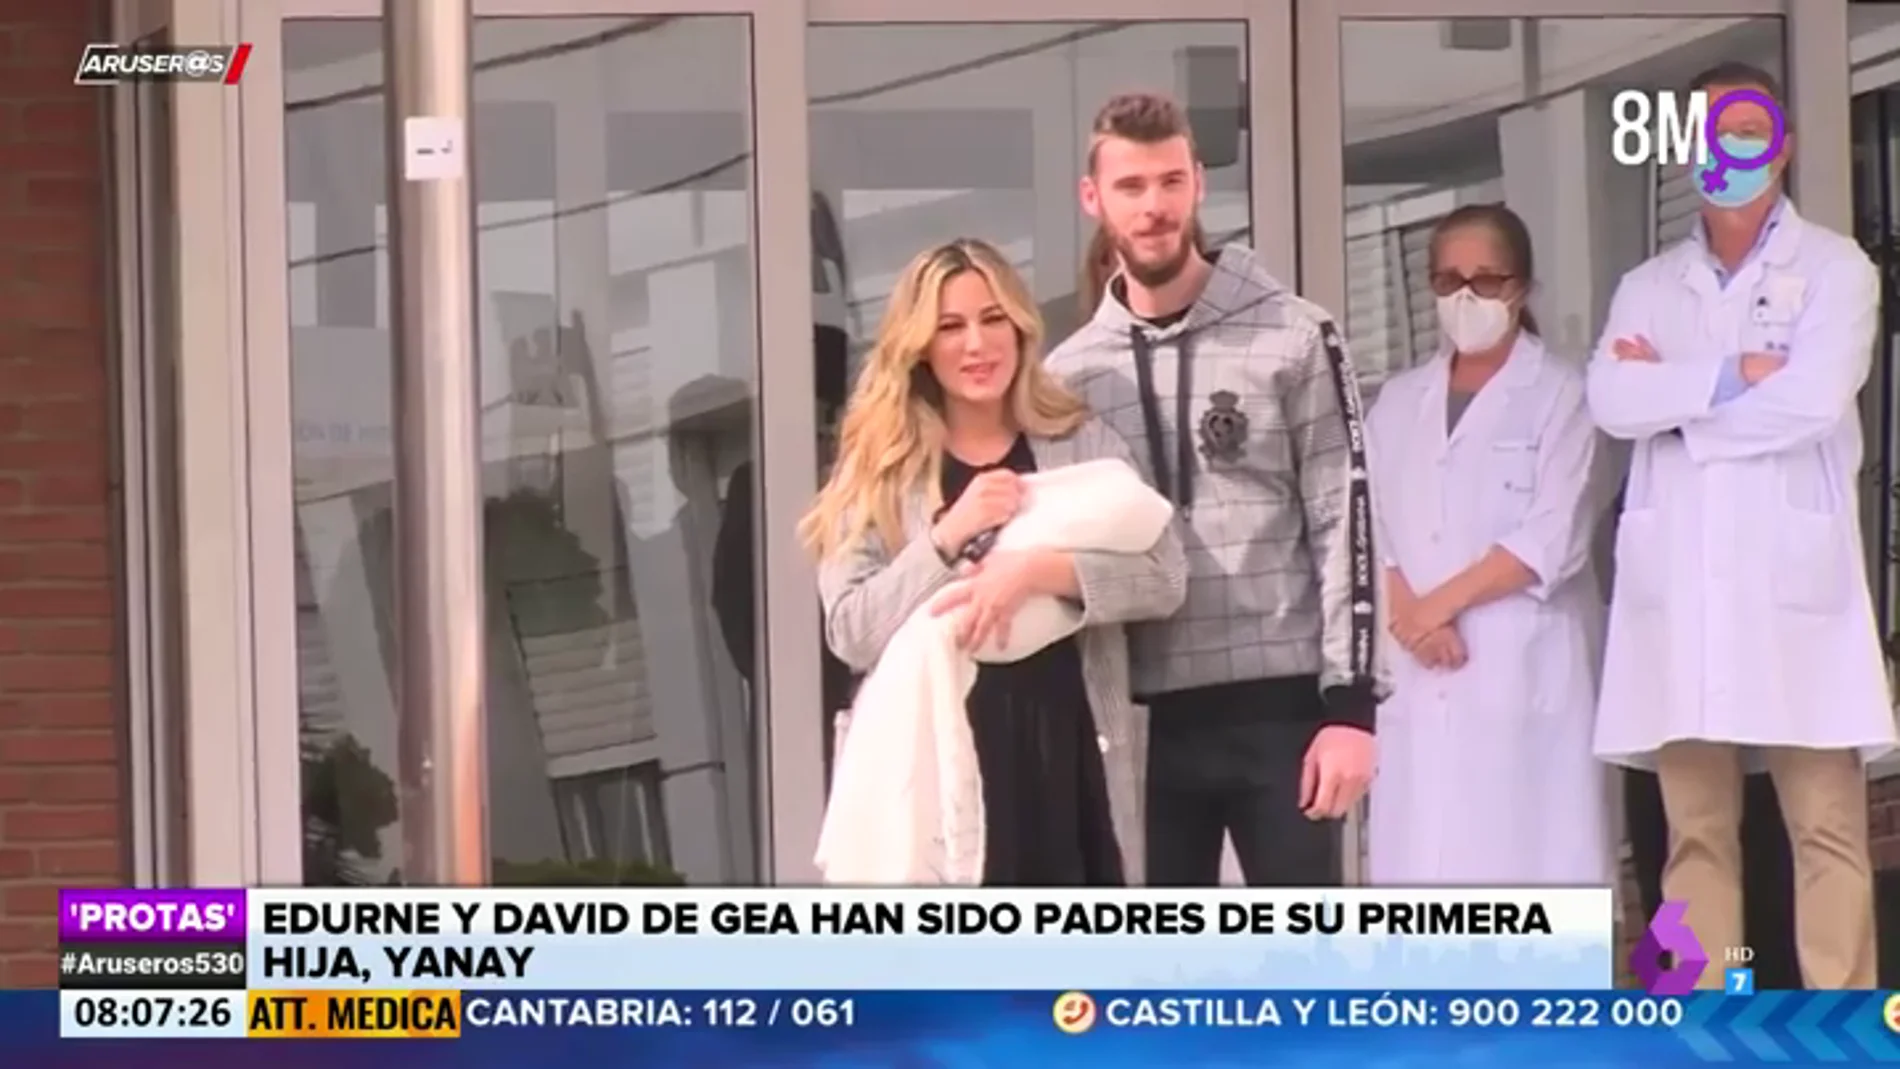 Edurne y David de Gea posan con su primera hija, Yanay, a la salida del hospital